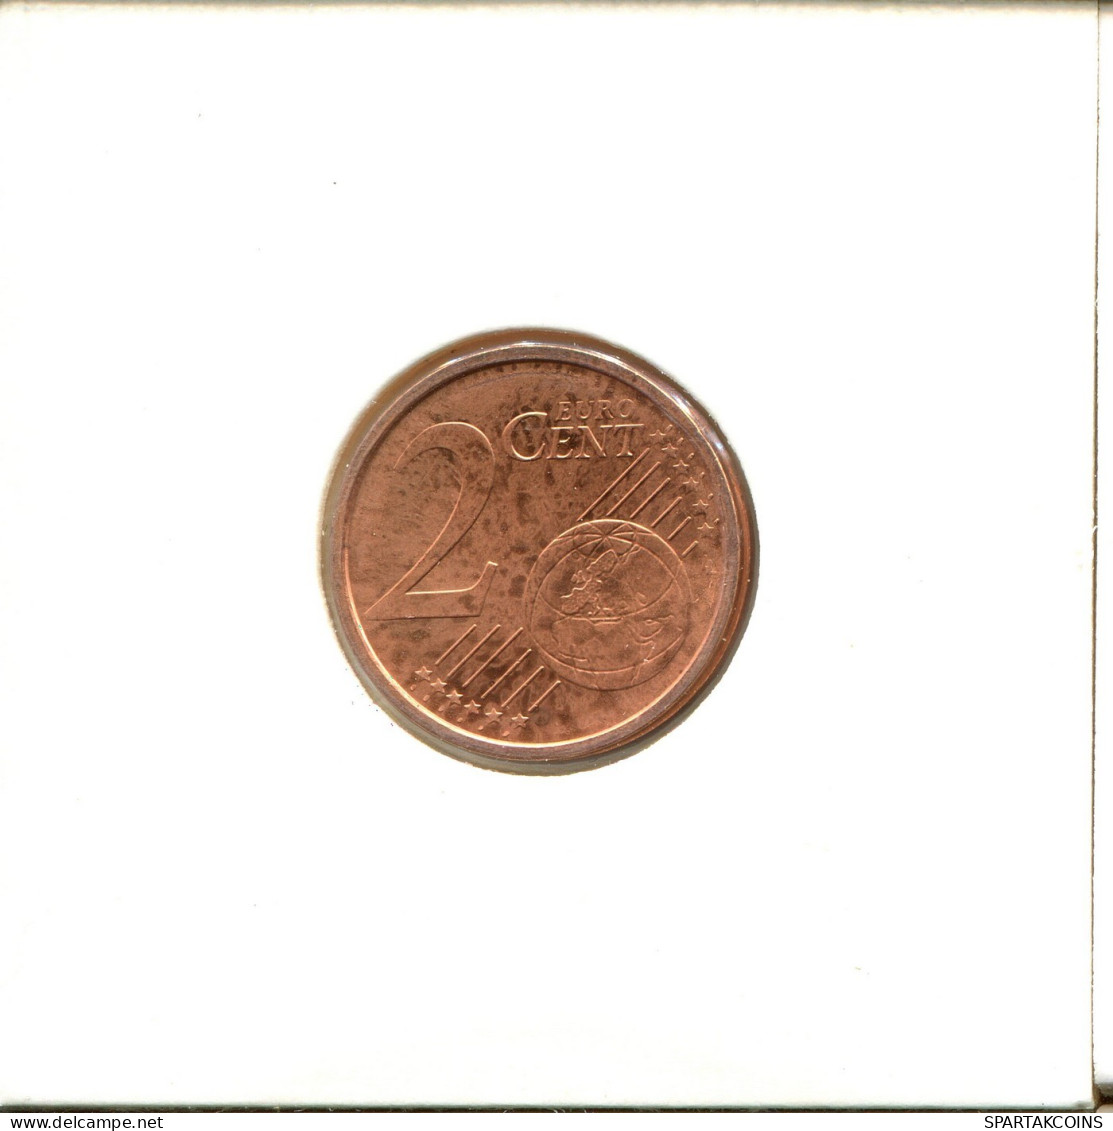 2 EURO CENTS 2009 ALEMANIA Moneda GERMANY #EU145.E.A - Germania